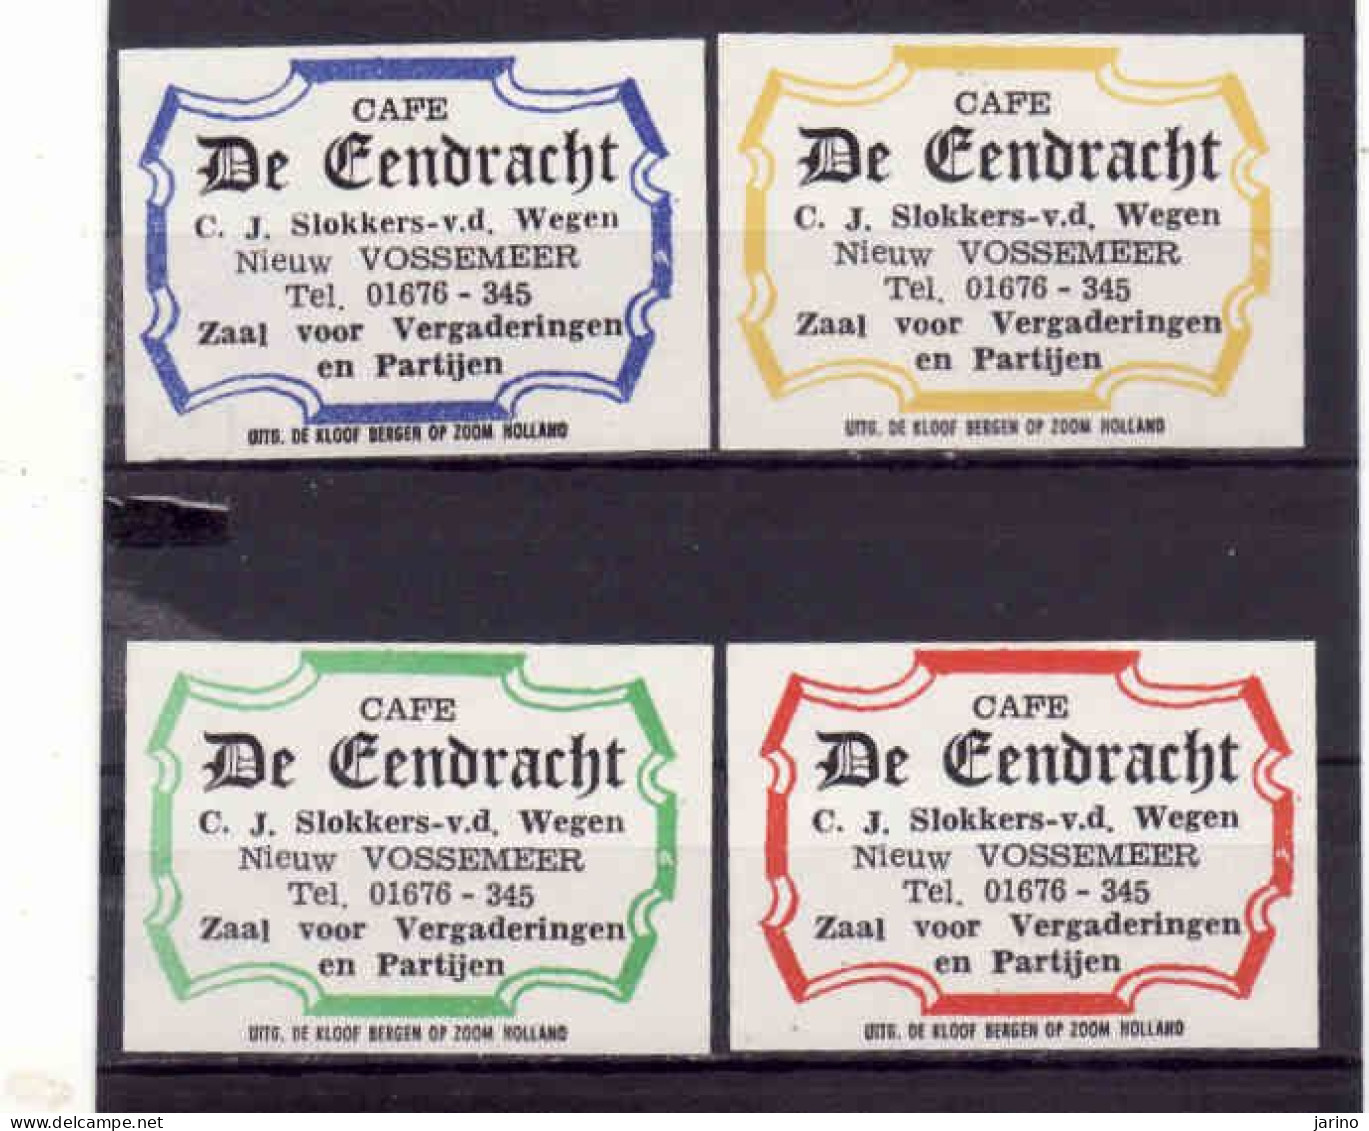 4 Dutch Matchbox Labels, Nieuw Vossemeer - North Brabant, Cafe De Fendracht,C.J.Slokkers-v.d.Wegen, Holland, Netherlands - Cajas De Cerillas - Etiquetas